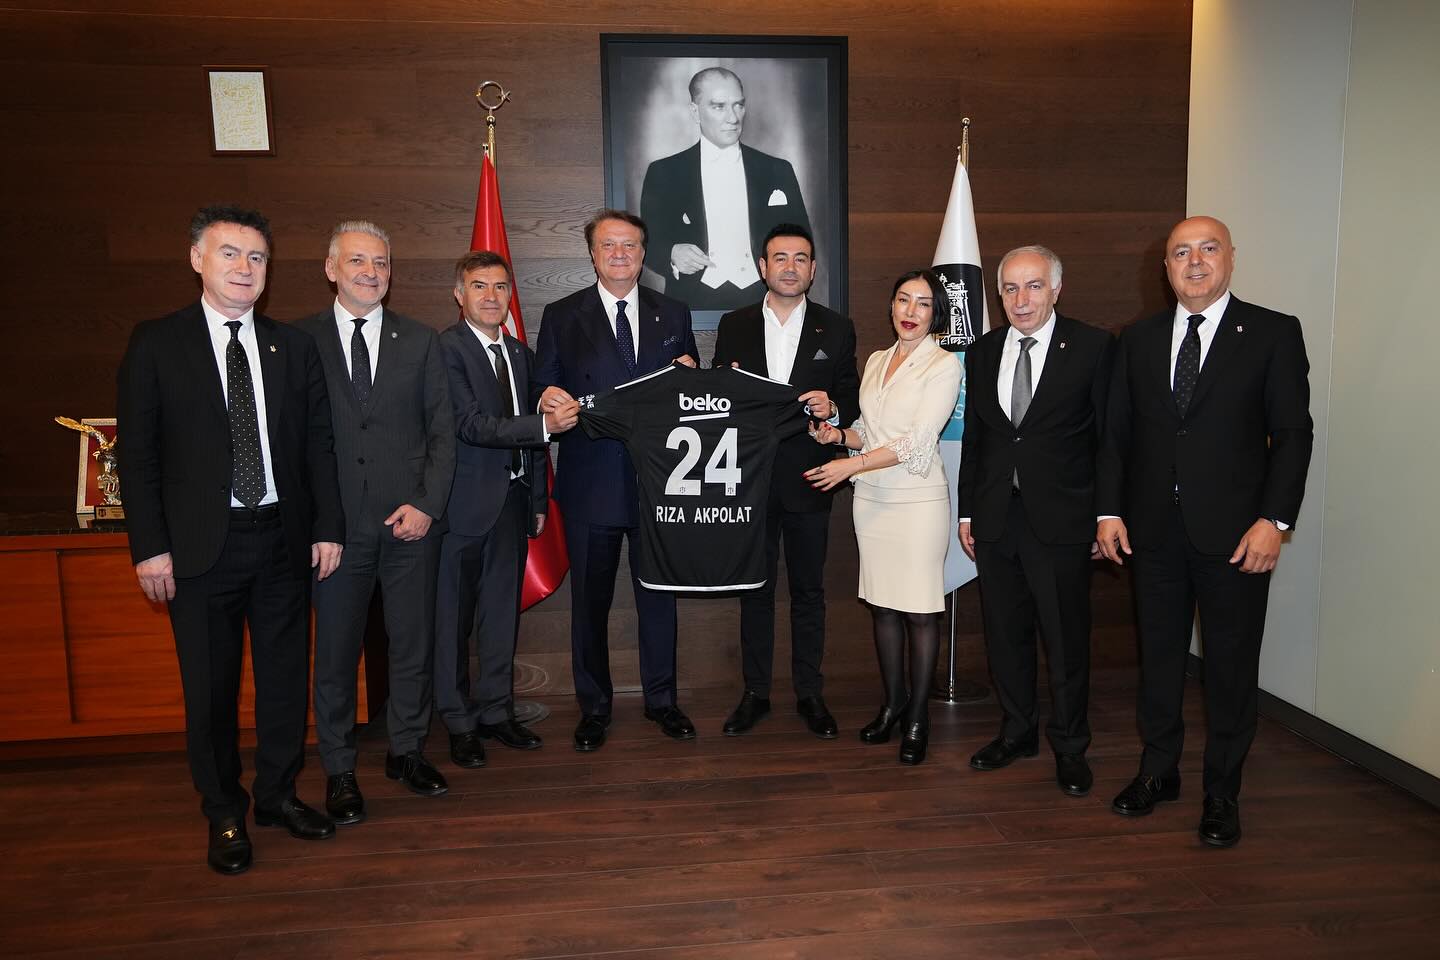 Beşiktaş Spor Kulübü Başkanı Hasan Arat'tan Beşiktaş Belediye Başkanı Rıza Akpolat'a Nezaket Ziyareti